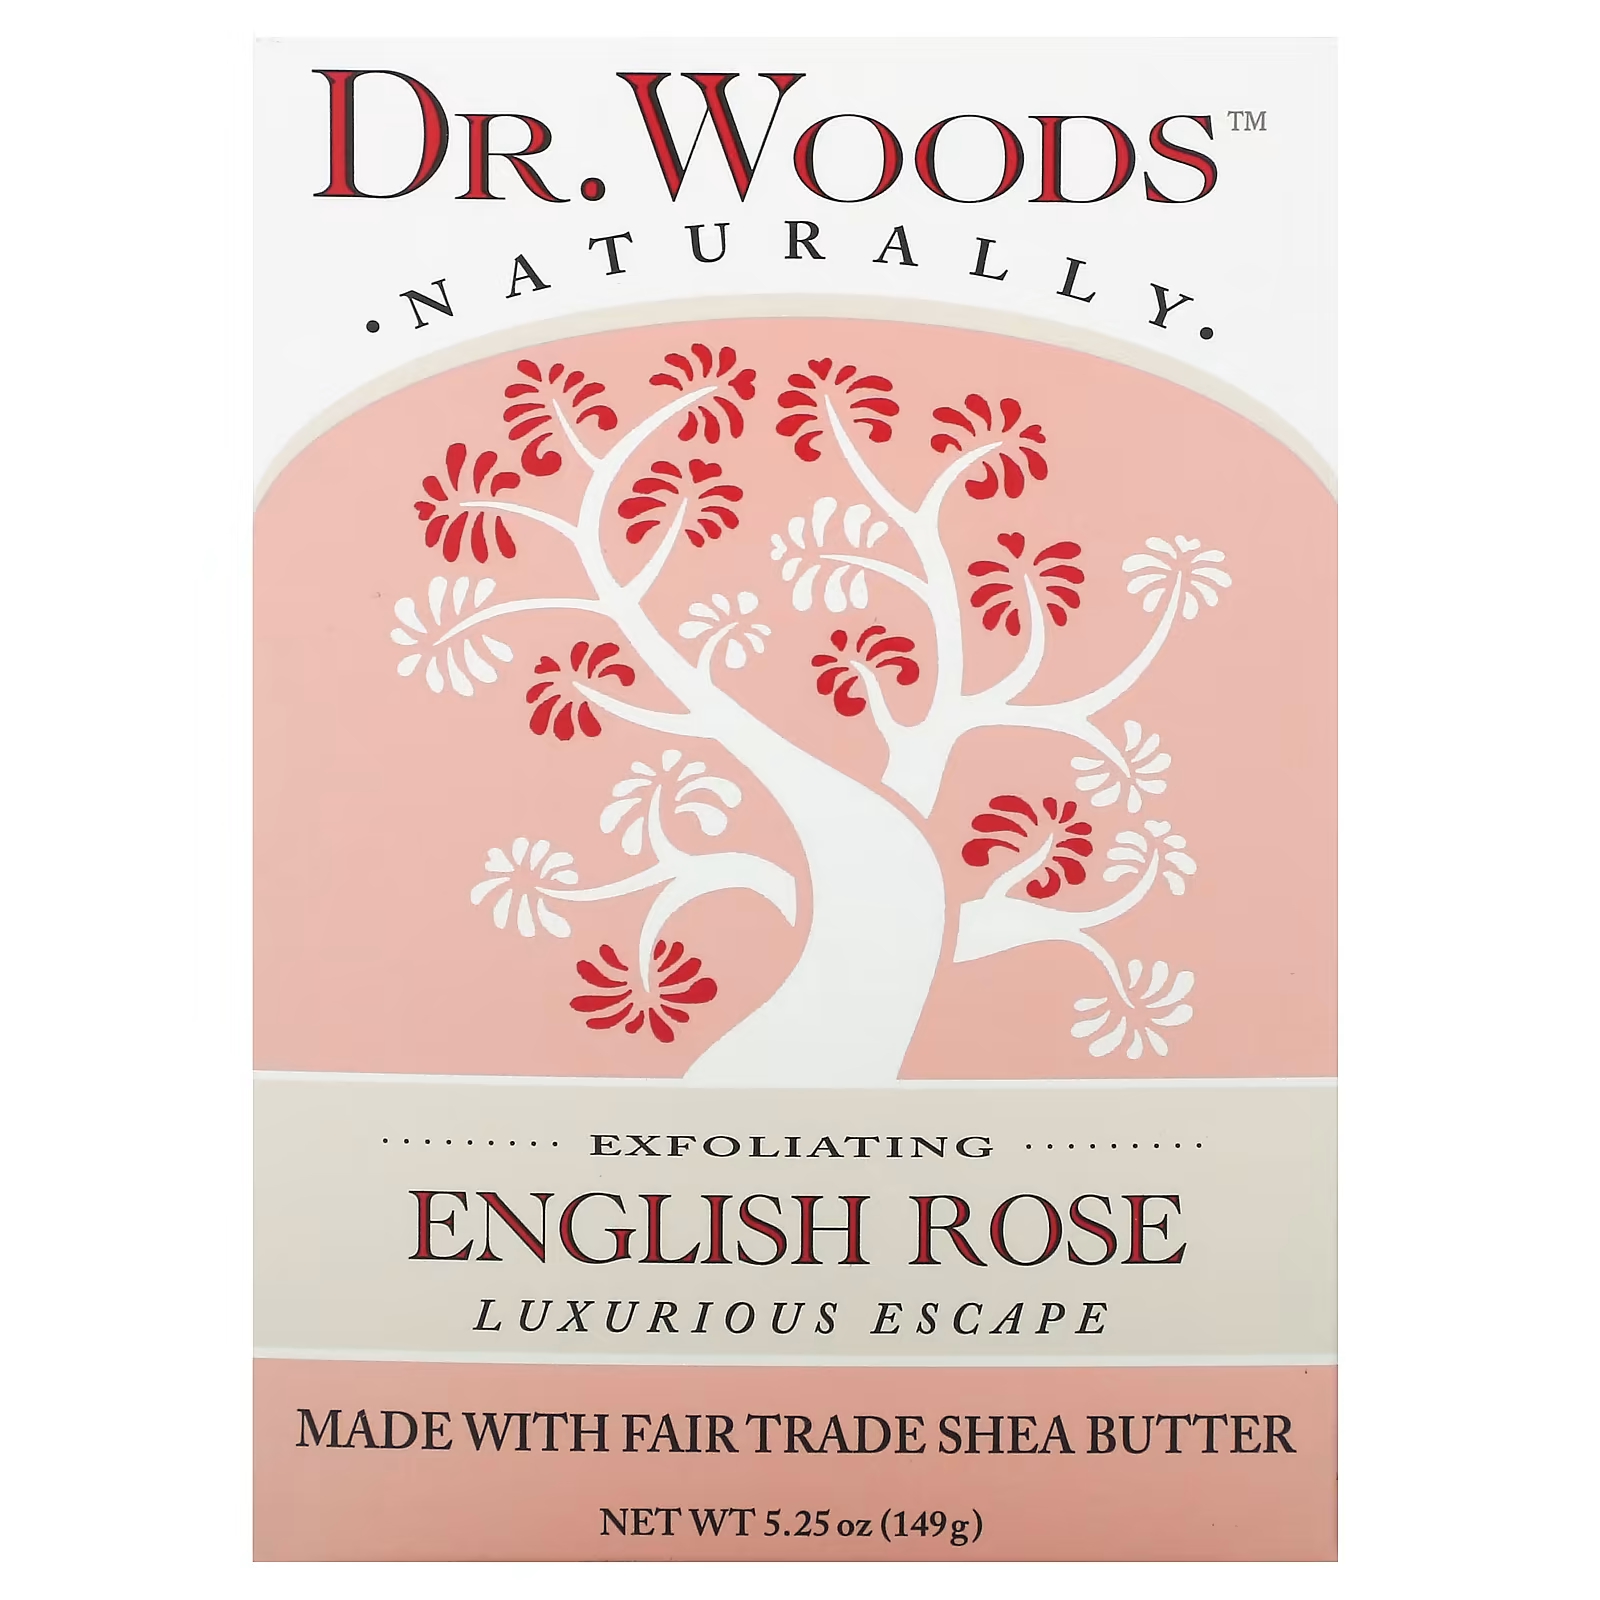 Woods Отшелушивающее мыло «Английская роза», 5,25 унции (149 г) Dr. Woods dr woods английское мыло с ароматом розы эффект осветления кожи 149 г 5 25 унции